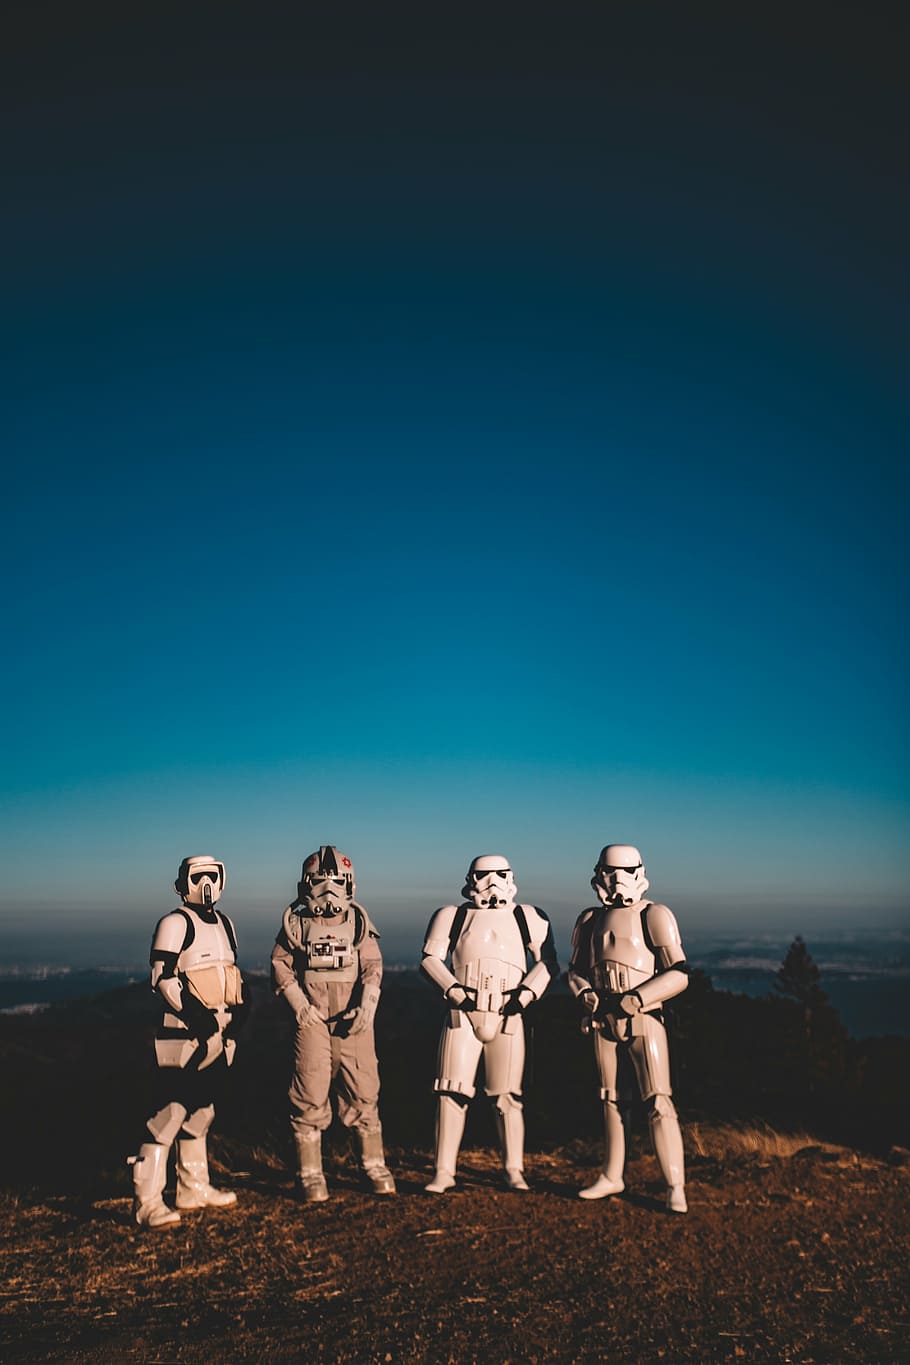 empat, star wars stormtroopers cosplay, berdiri, lapangan, pria, mengenakan, putih, bintang, perang, bertema